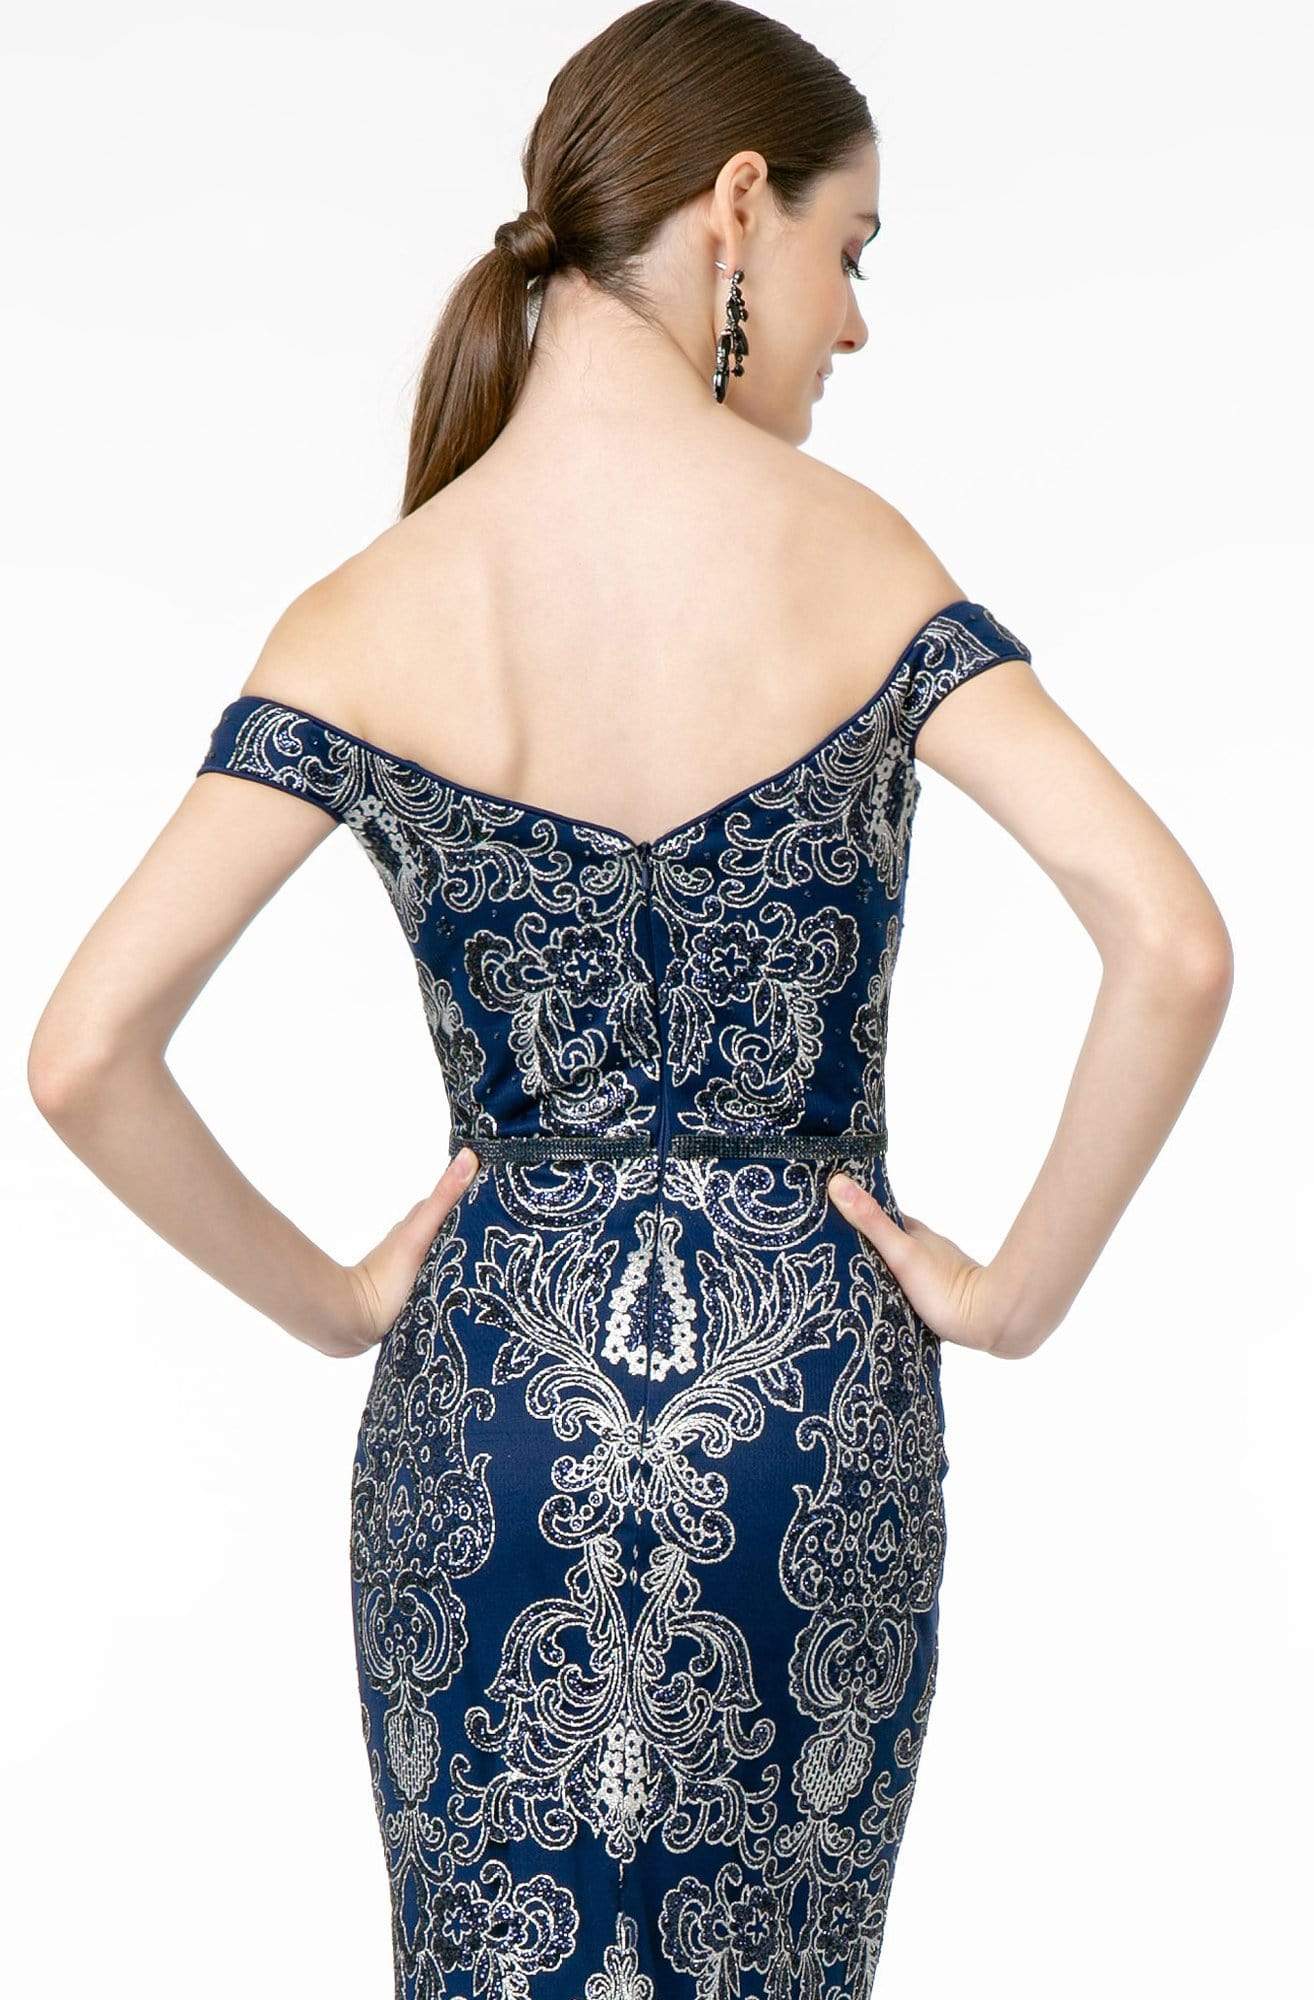 Elizabeth K - GL2922 Glitter Off-Shoulder Evening Dress Evening Dresses